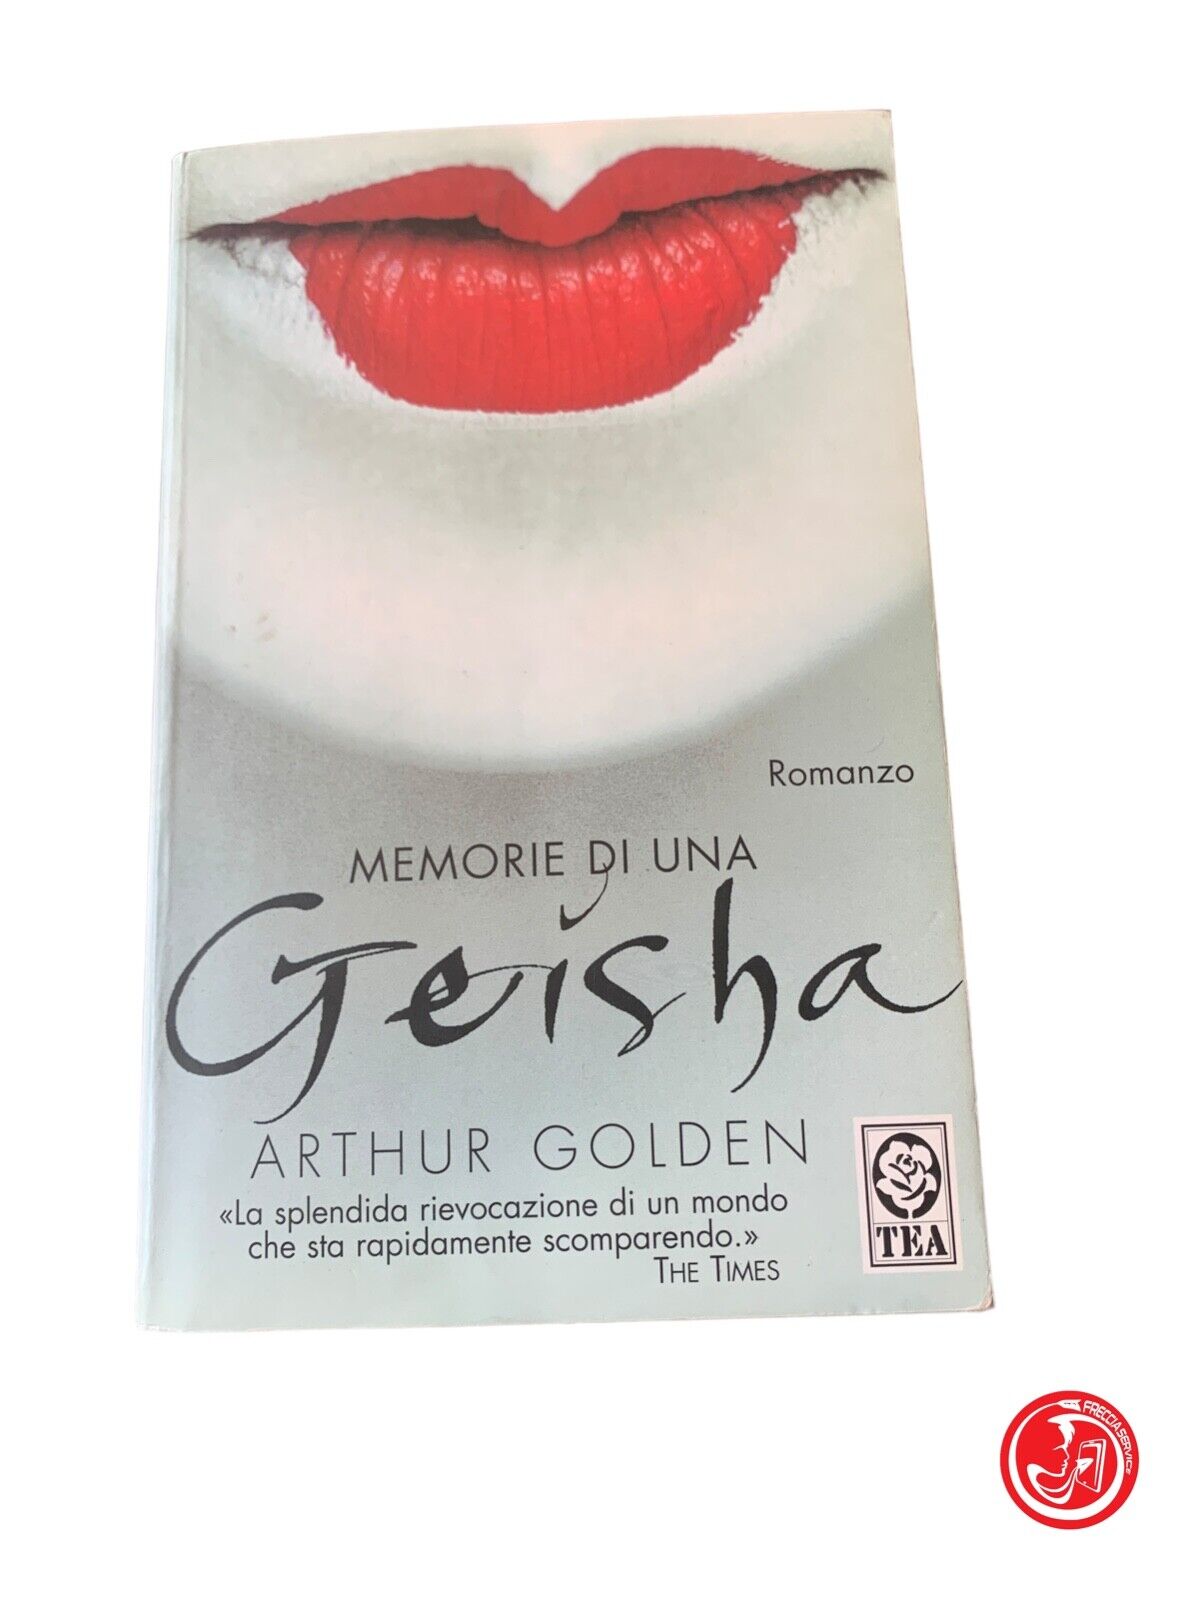 Memorie di una Geisha - Arthur Golden - Tea Due